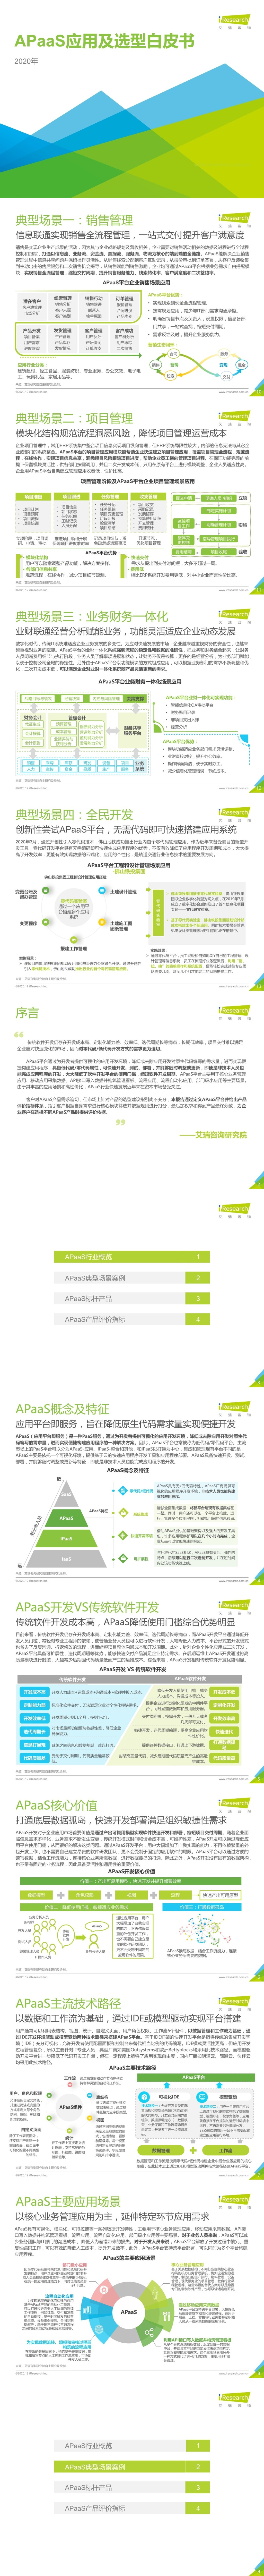 「行业报告」艾瑞咨询：2020年中国APaaS应用及选型白皮书